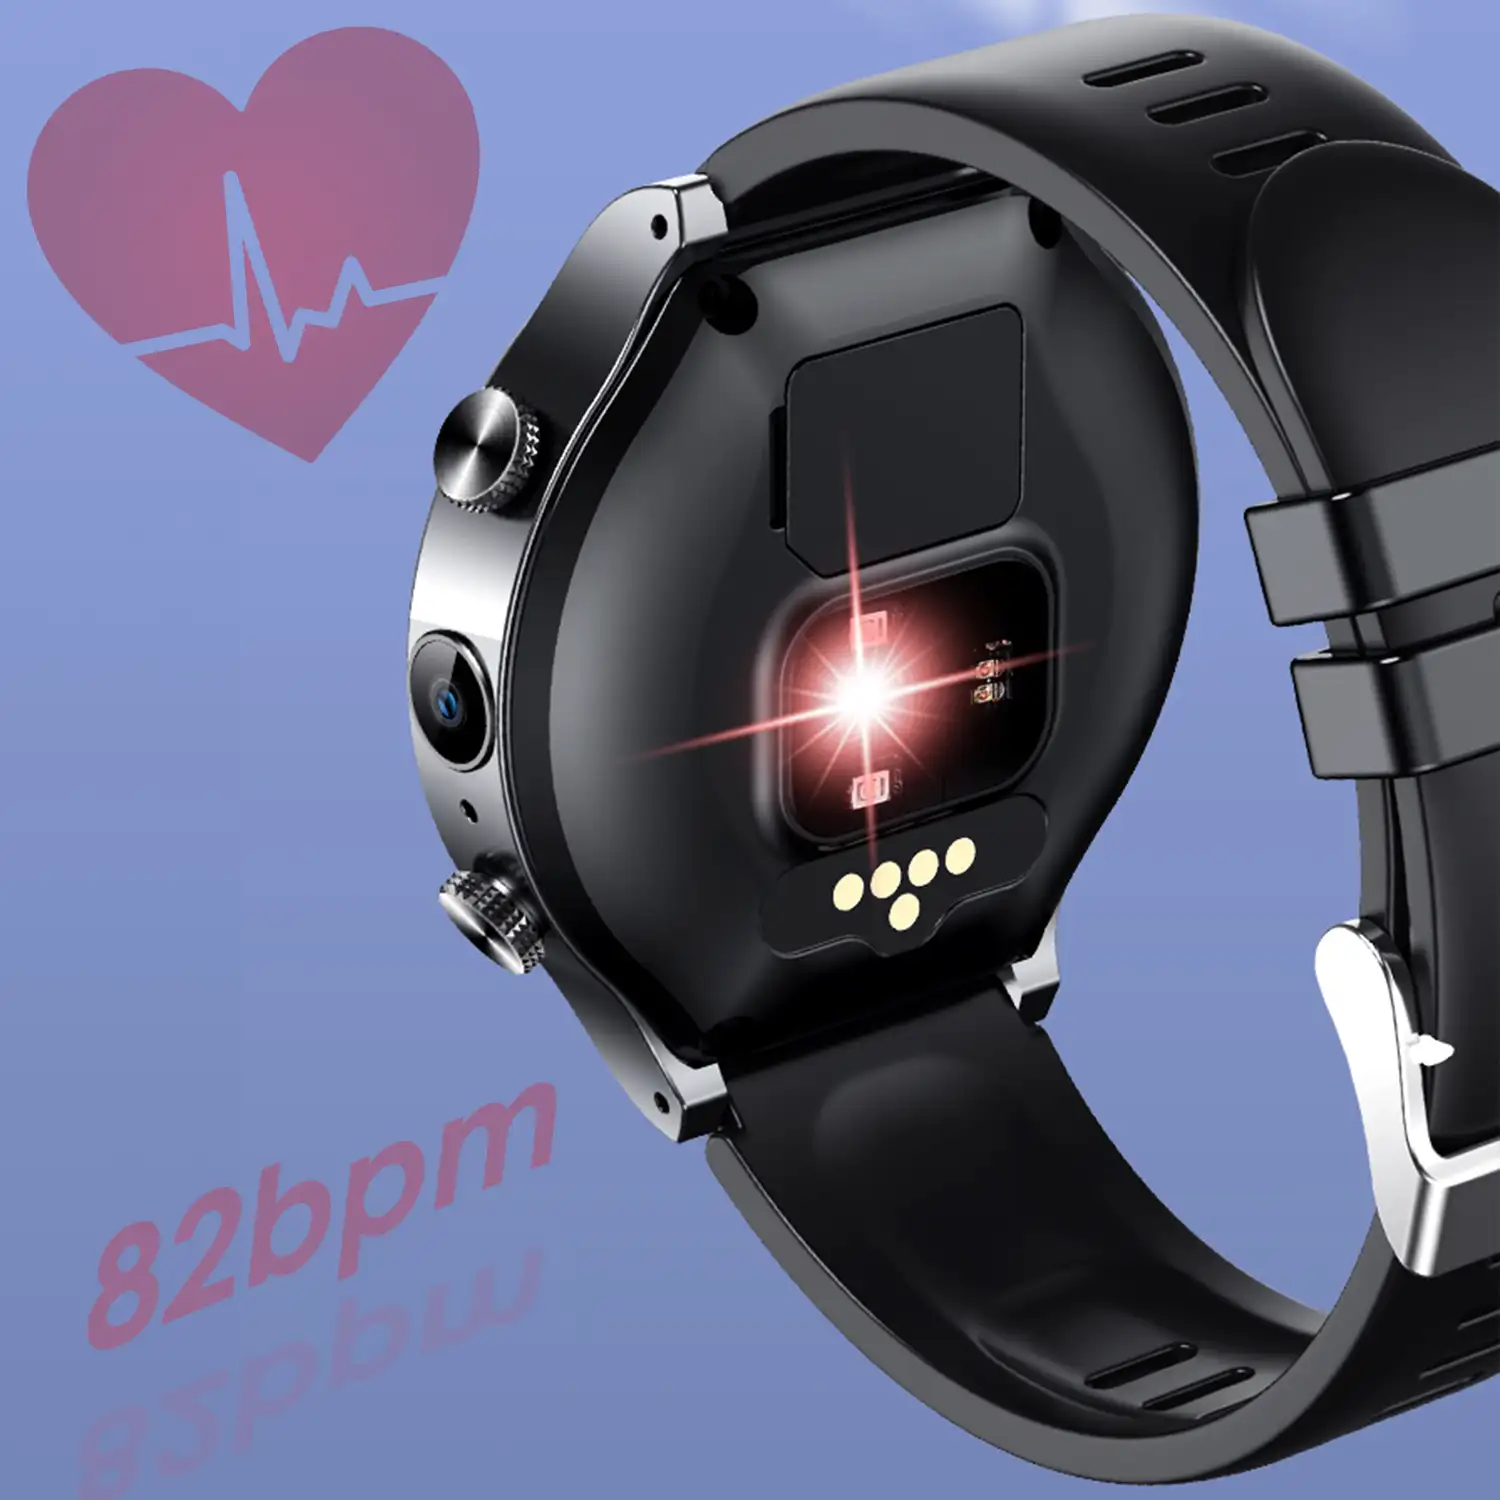 D12W-XT Smartwatch 4G localizador LBS + Wifi. Con termómetro, monitor cardiaco, tensión y oxígeno en sangre.